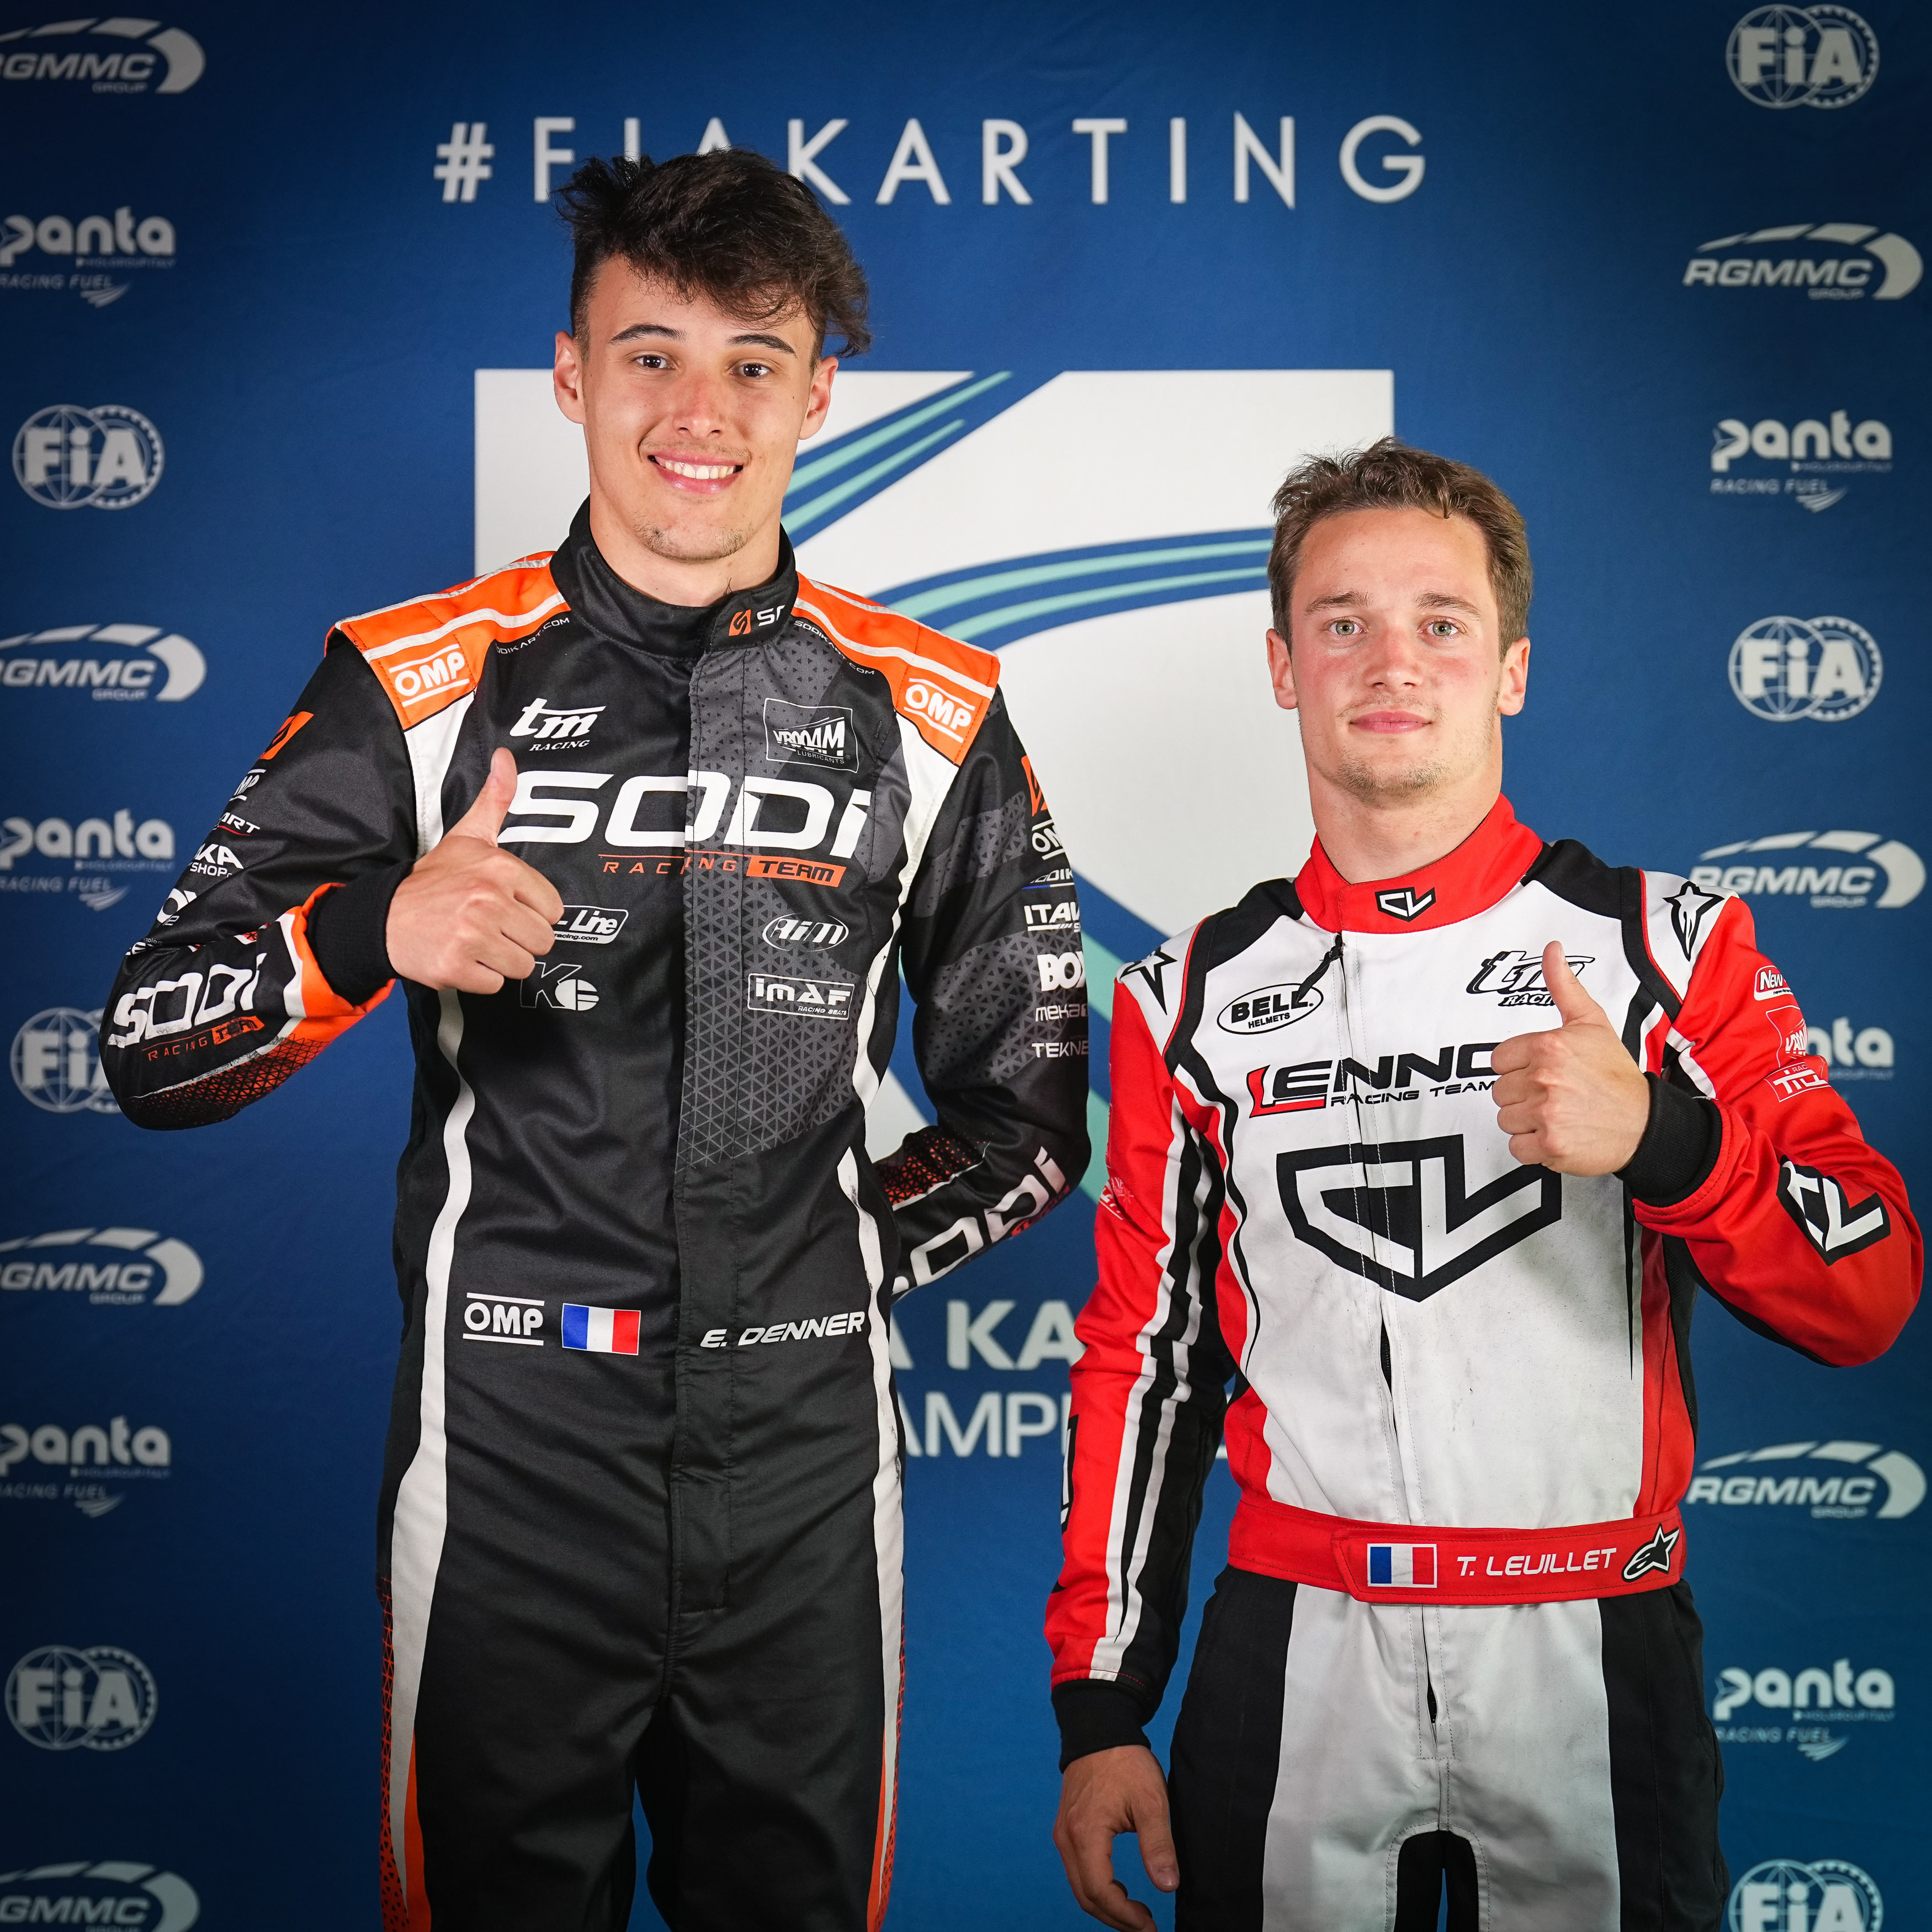 FIA Karting – Tensions rise in Belgium